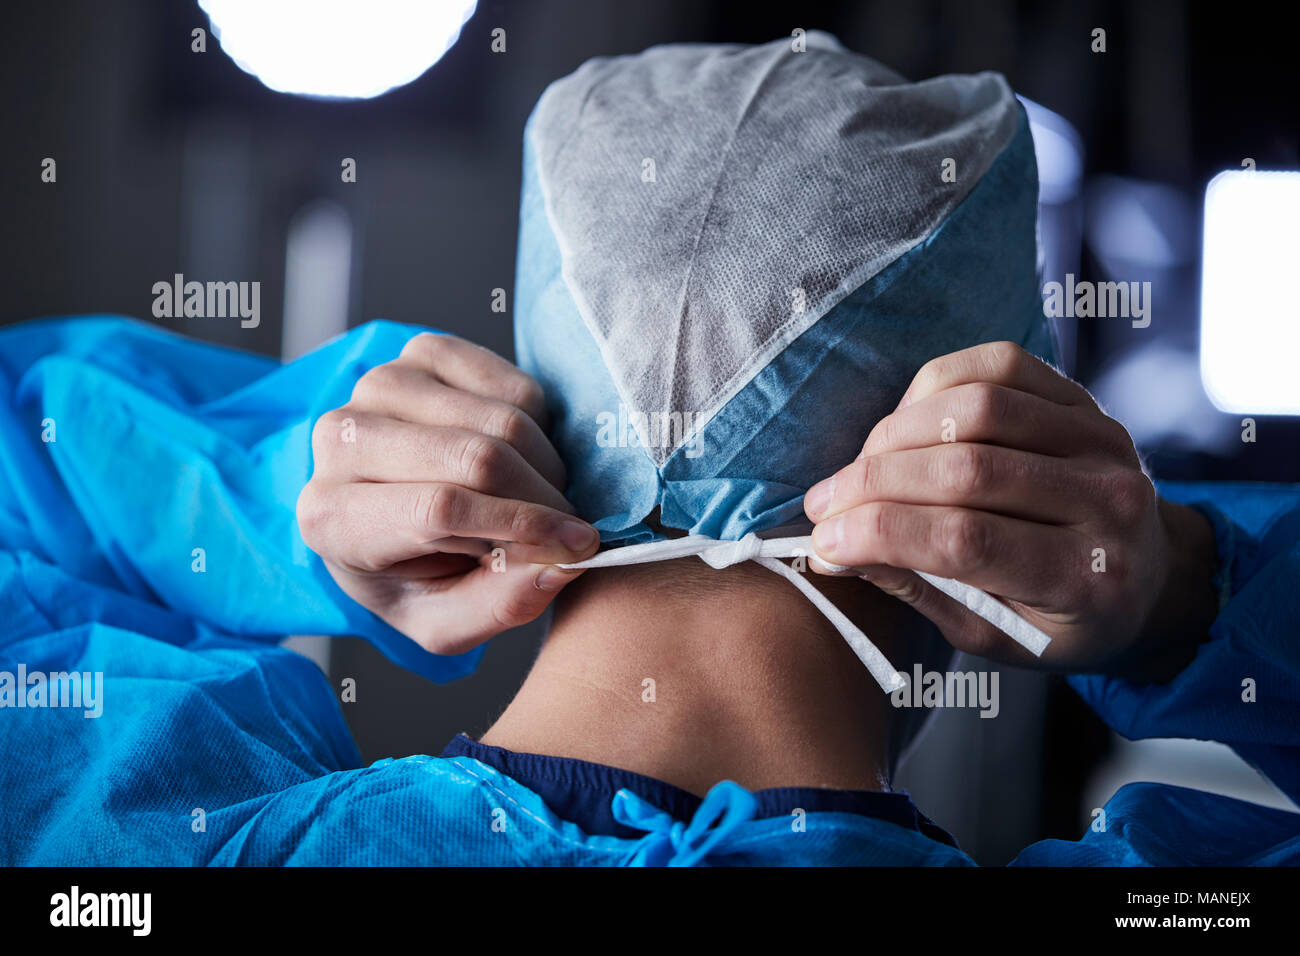 Chirurgo di legatura cappuccio chirurgica in preparazione, vista posteriore Foto Stock